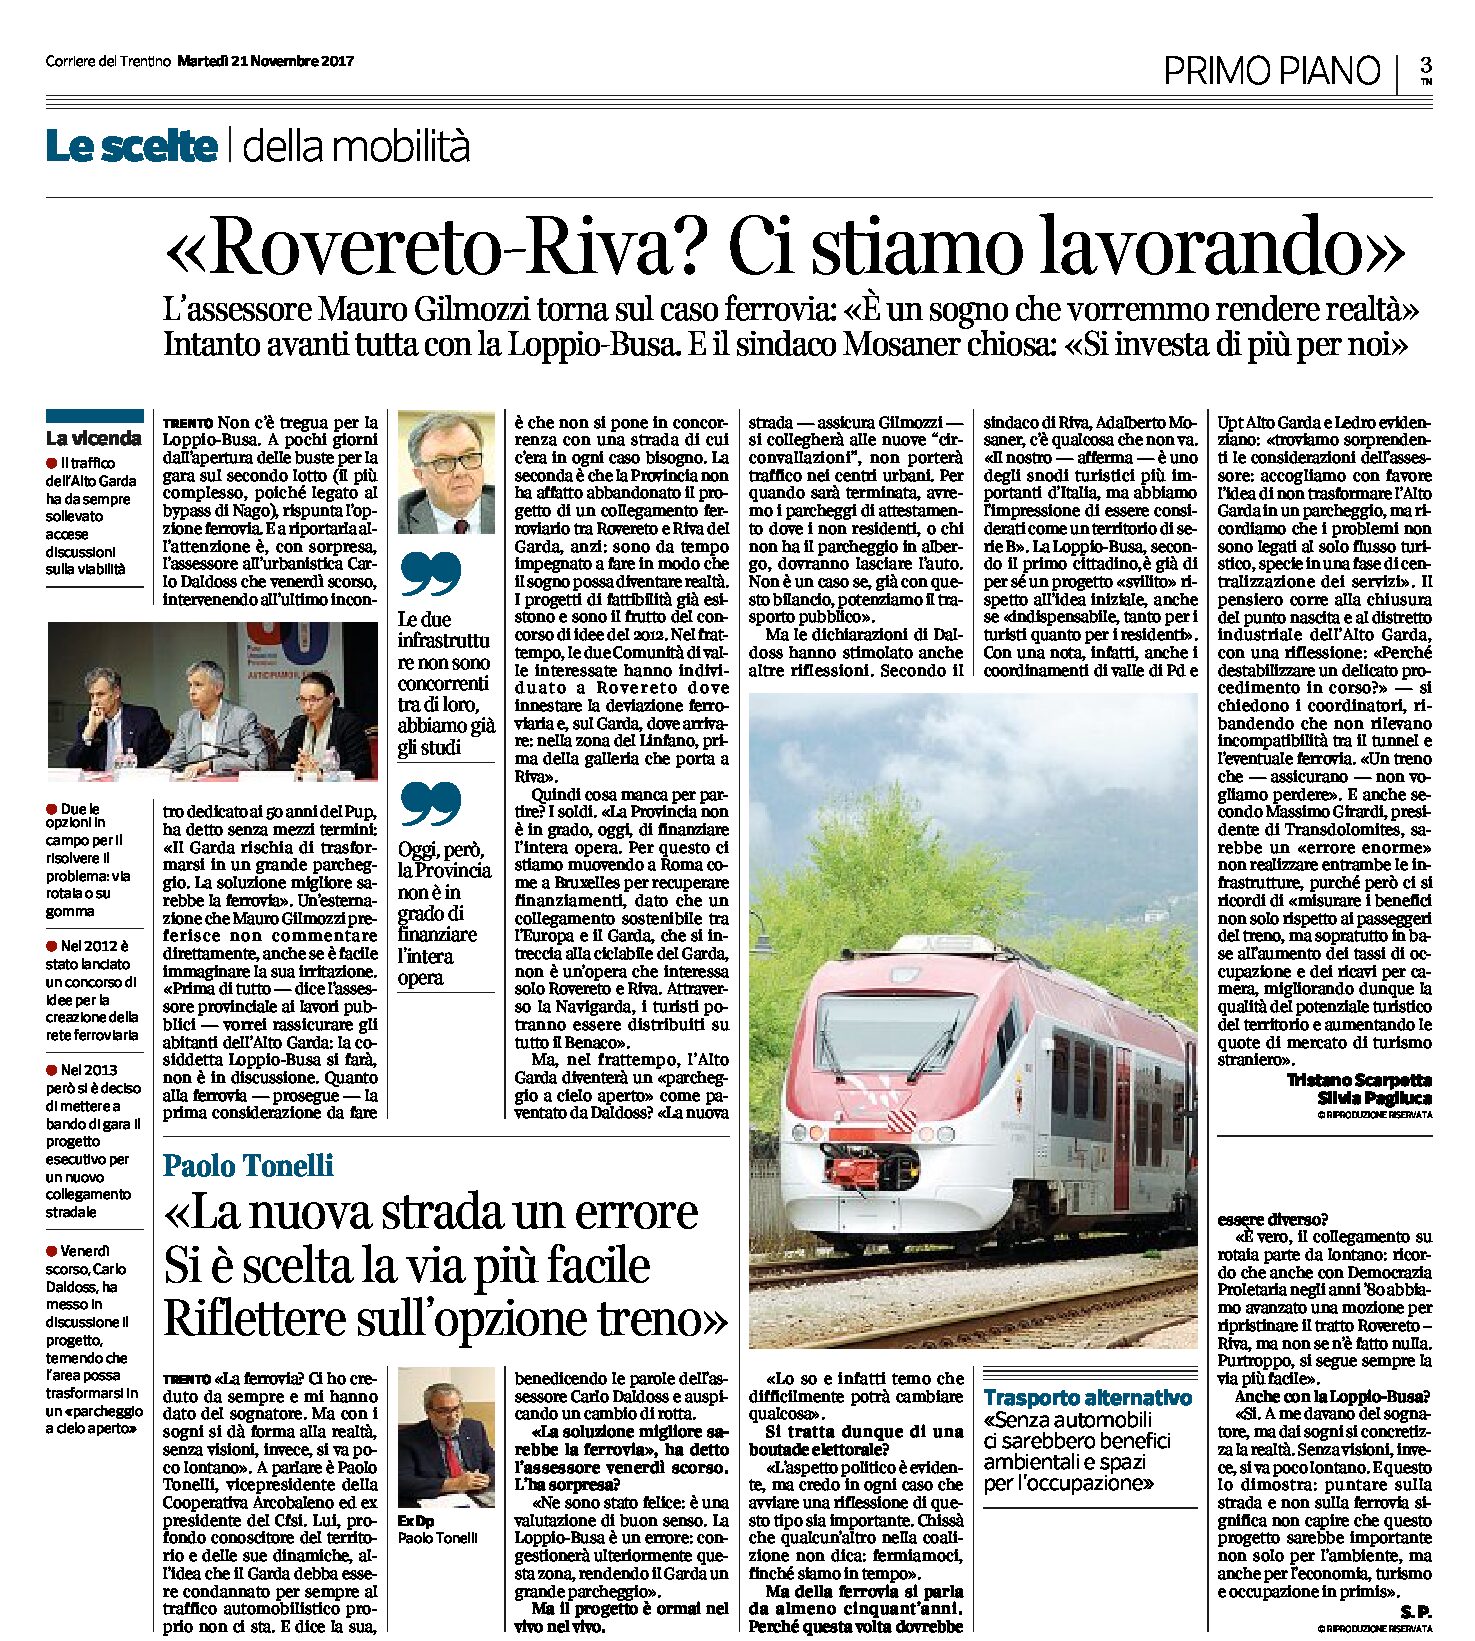 Rovereto-Riva: Gilmozzi “sulla ferrovia ci stiamo lavorando, intanto avanti con la Loppio-Busa”